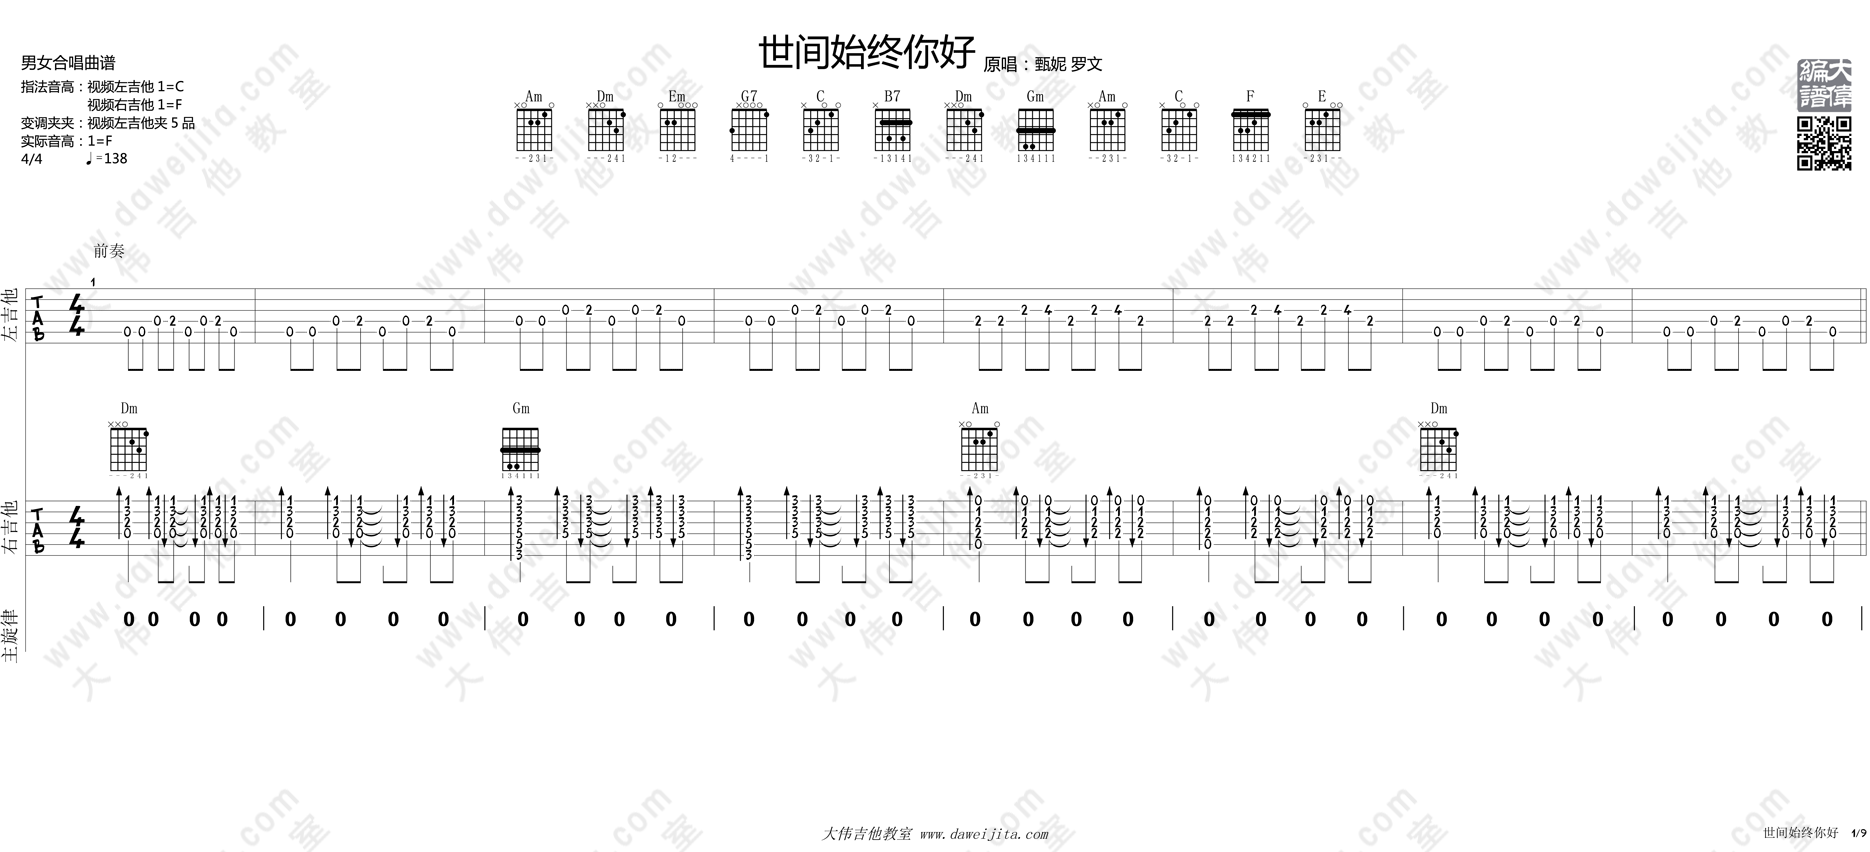 罗文,甄妮《世间始终你好》吉他谱(C调)-Guitar Music Score